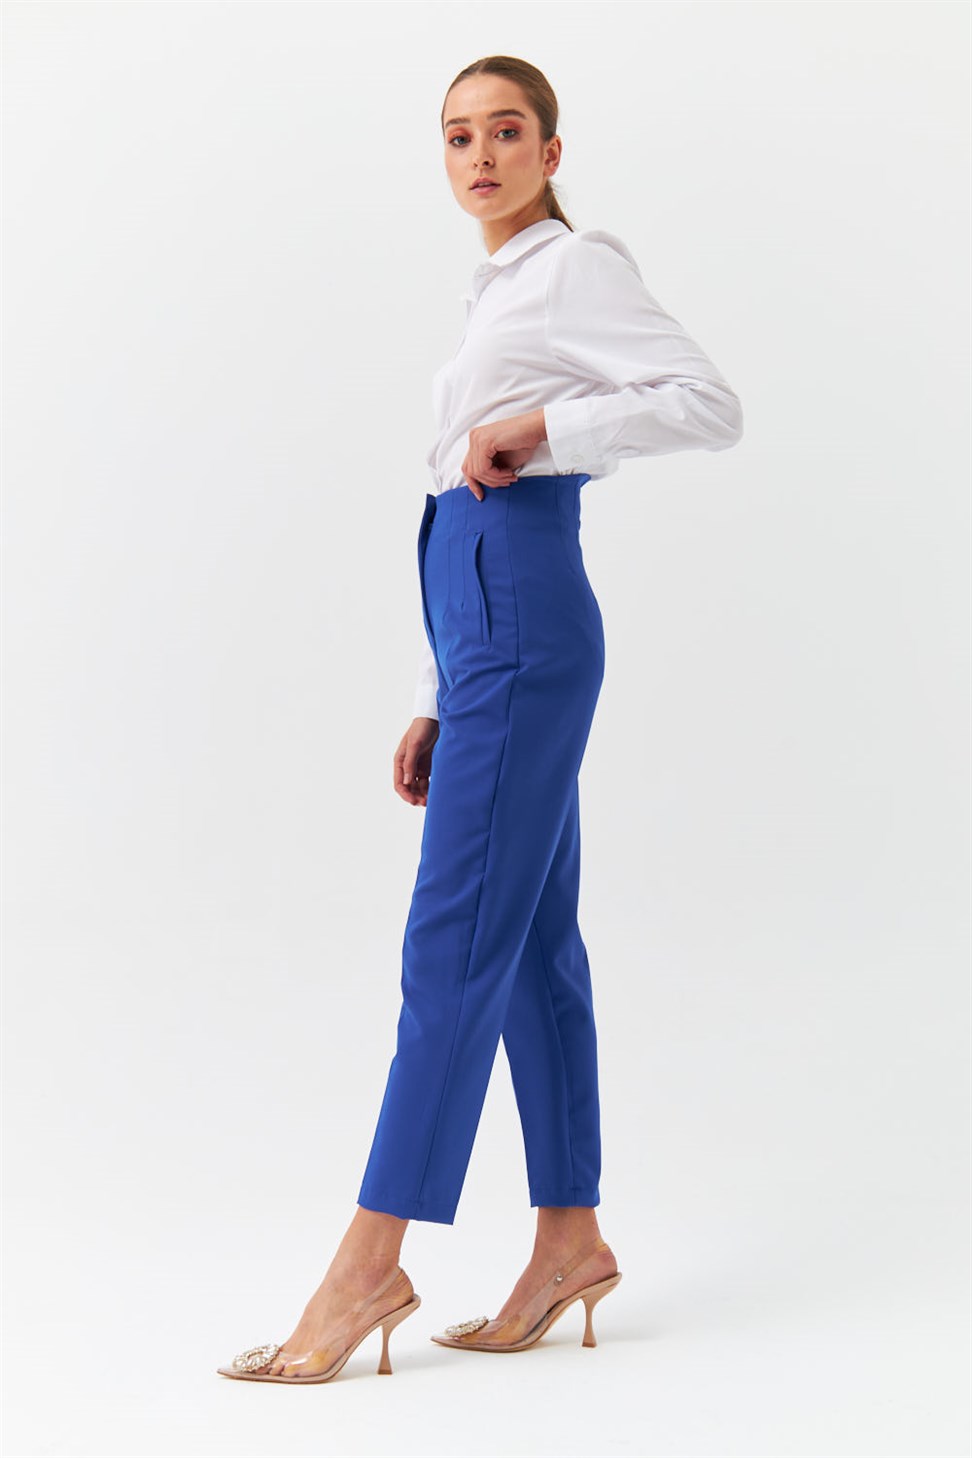 Modest High Waist Sax Blue Womens Fabric Trousers